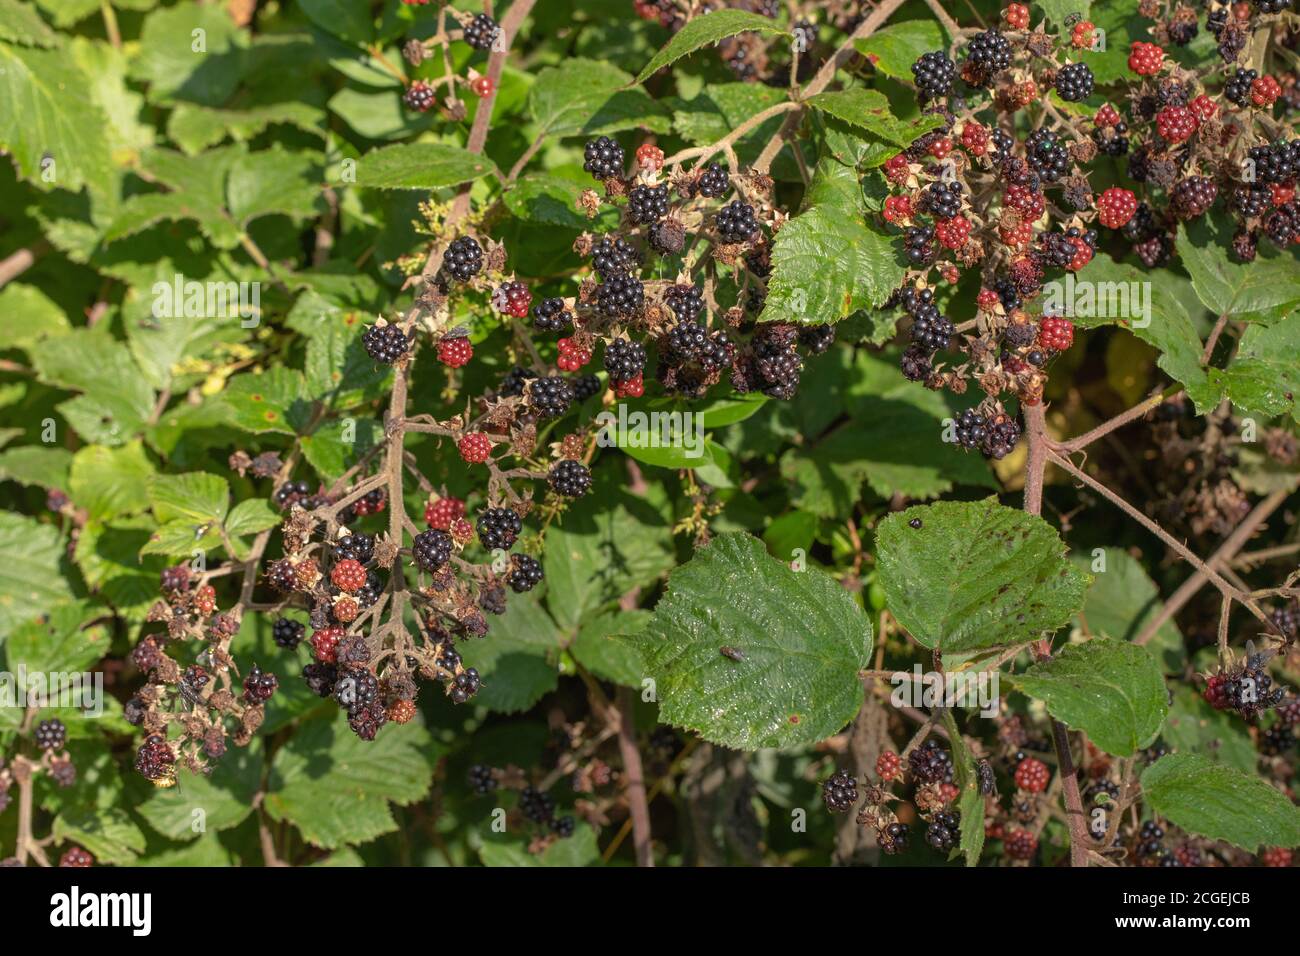 Mûres (Rubus fruticosus). Segments individuels, baies, à différents stades de mûrissement. Plantes à fleurs vertes, rampantes, en expansion et en clambering Banque D'Images